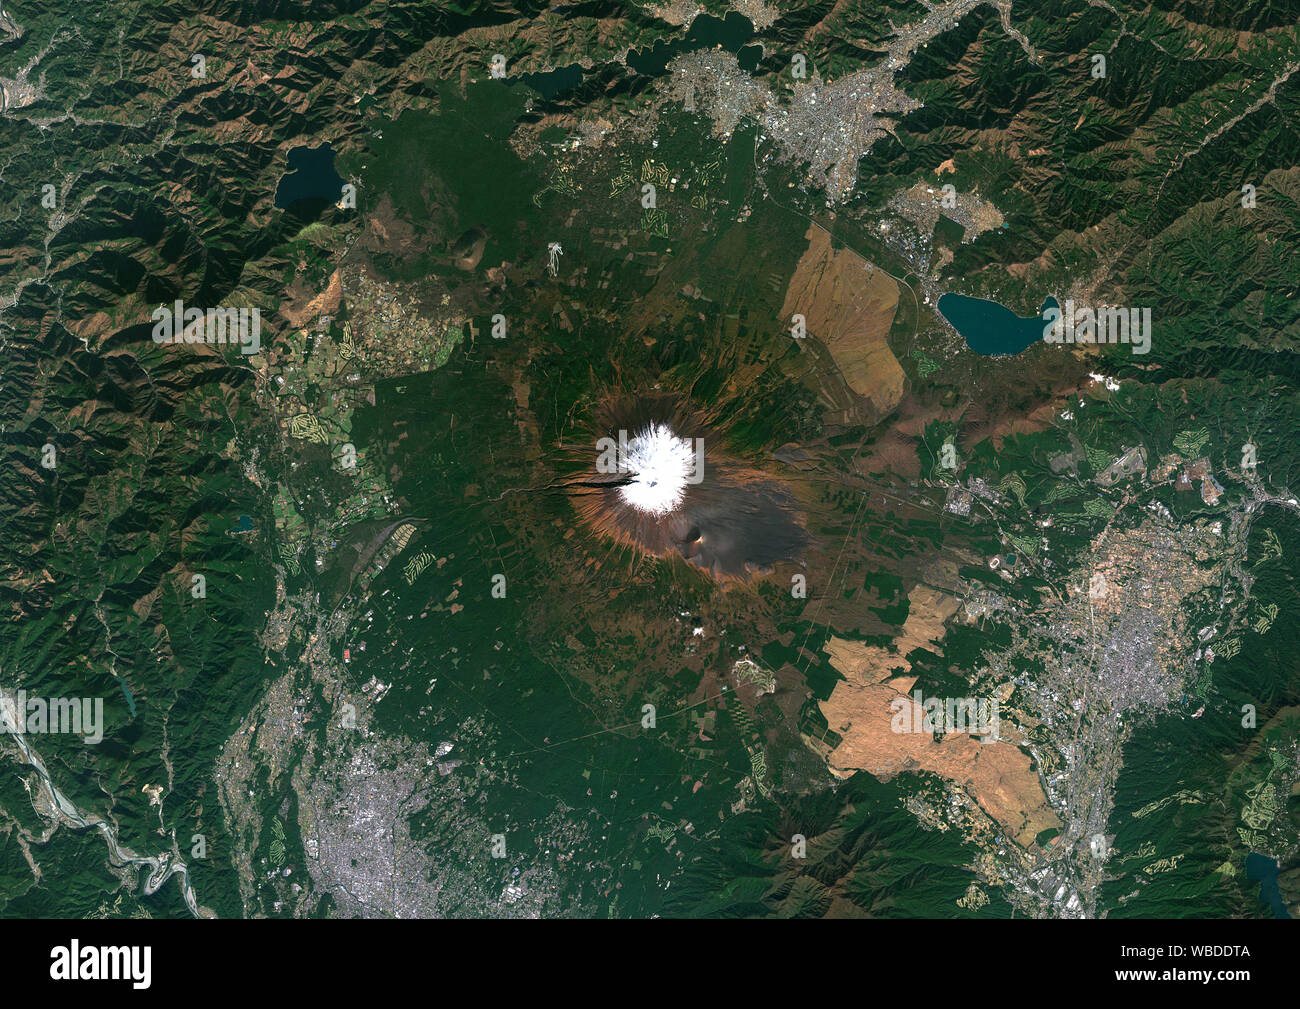 Farbe Satellitenbild von Mount Fuji, Japan. Der höchste Punkt der Japan auf 3776 m, Mount Fuji Fuji Yama liegt südwestlich von Tokio, auf der Insel Honshu. Es wurde im Jahr 2013 von der UNESCO in die Liste des Erbes der Welt als kultureller Standort hinzugefügt. Bild gesammelt am 30. Oktober 2018 Von Sentinel-2 Satelliten. Stockfoto